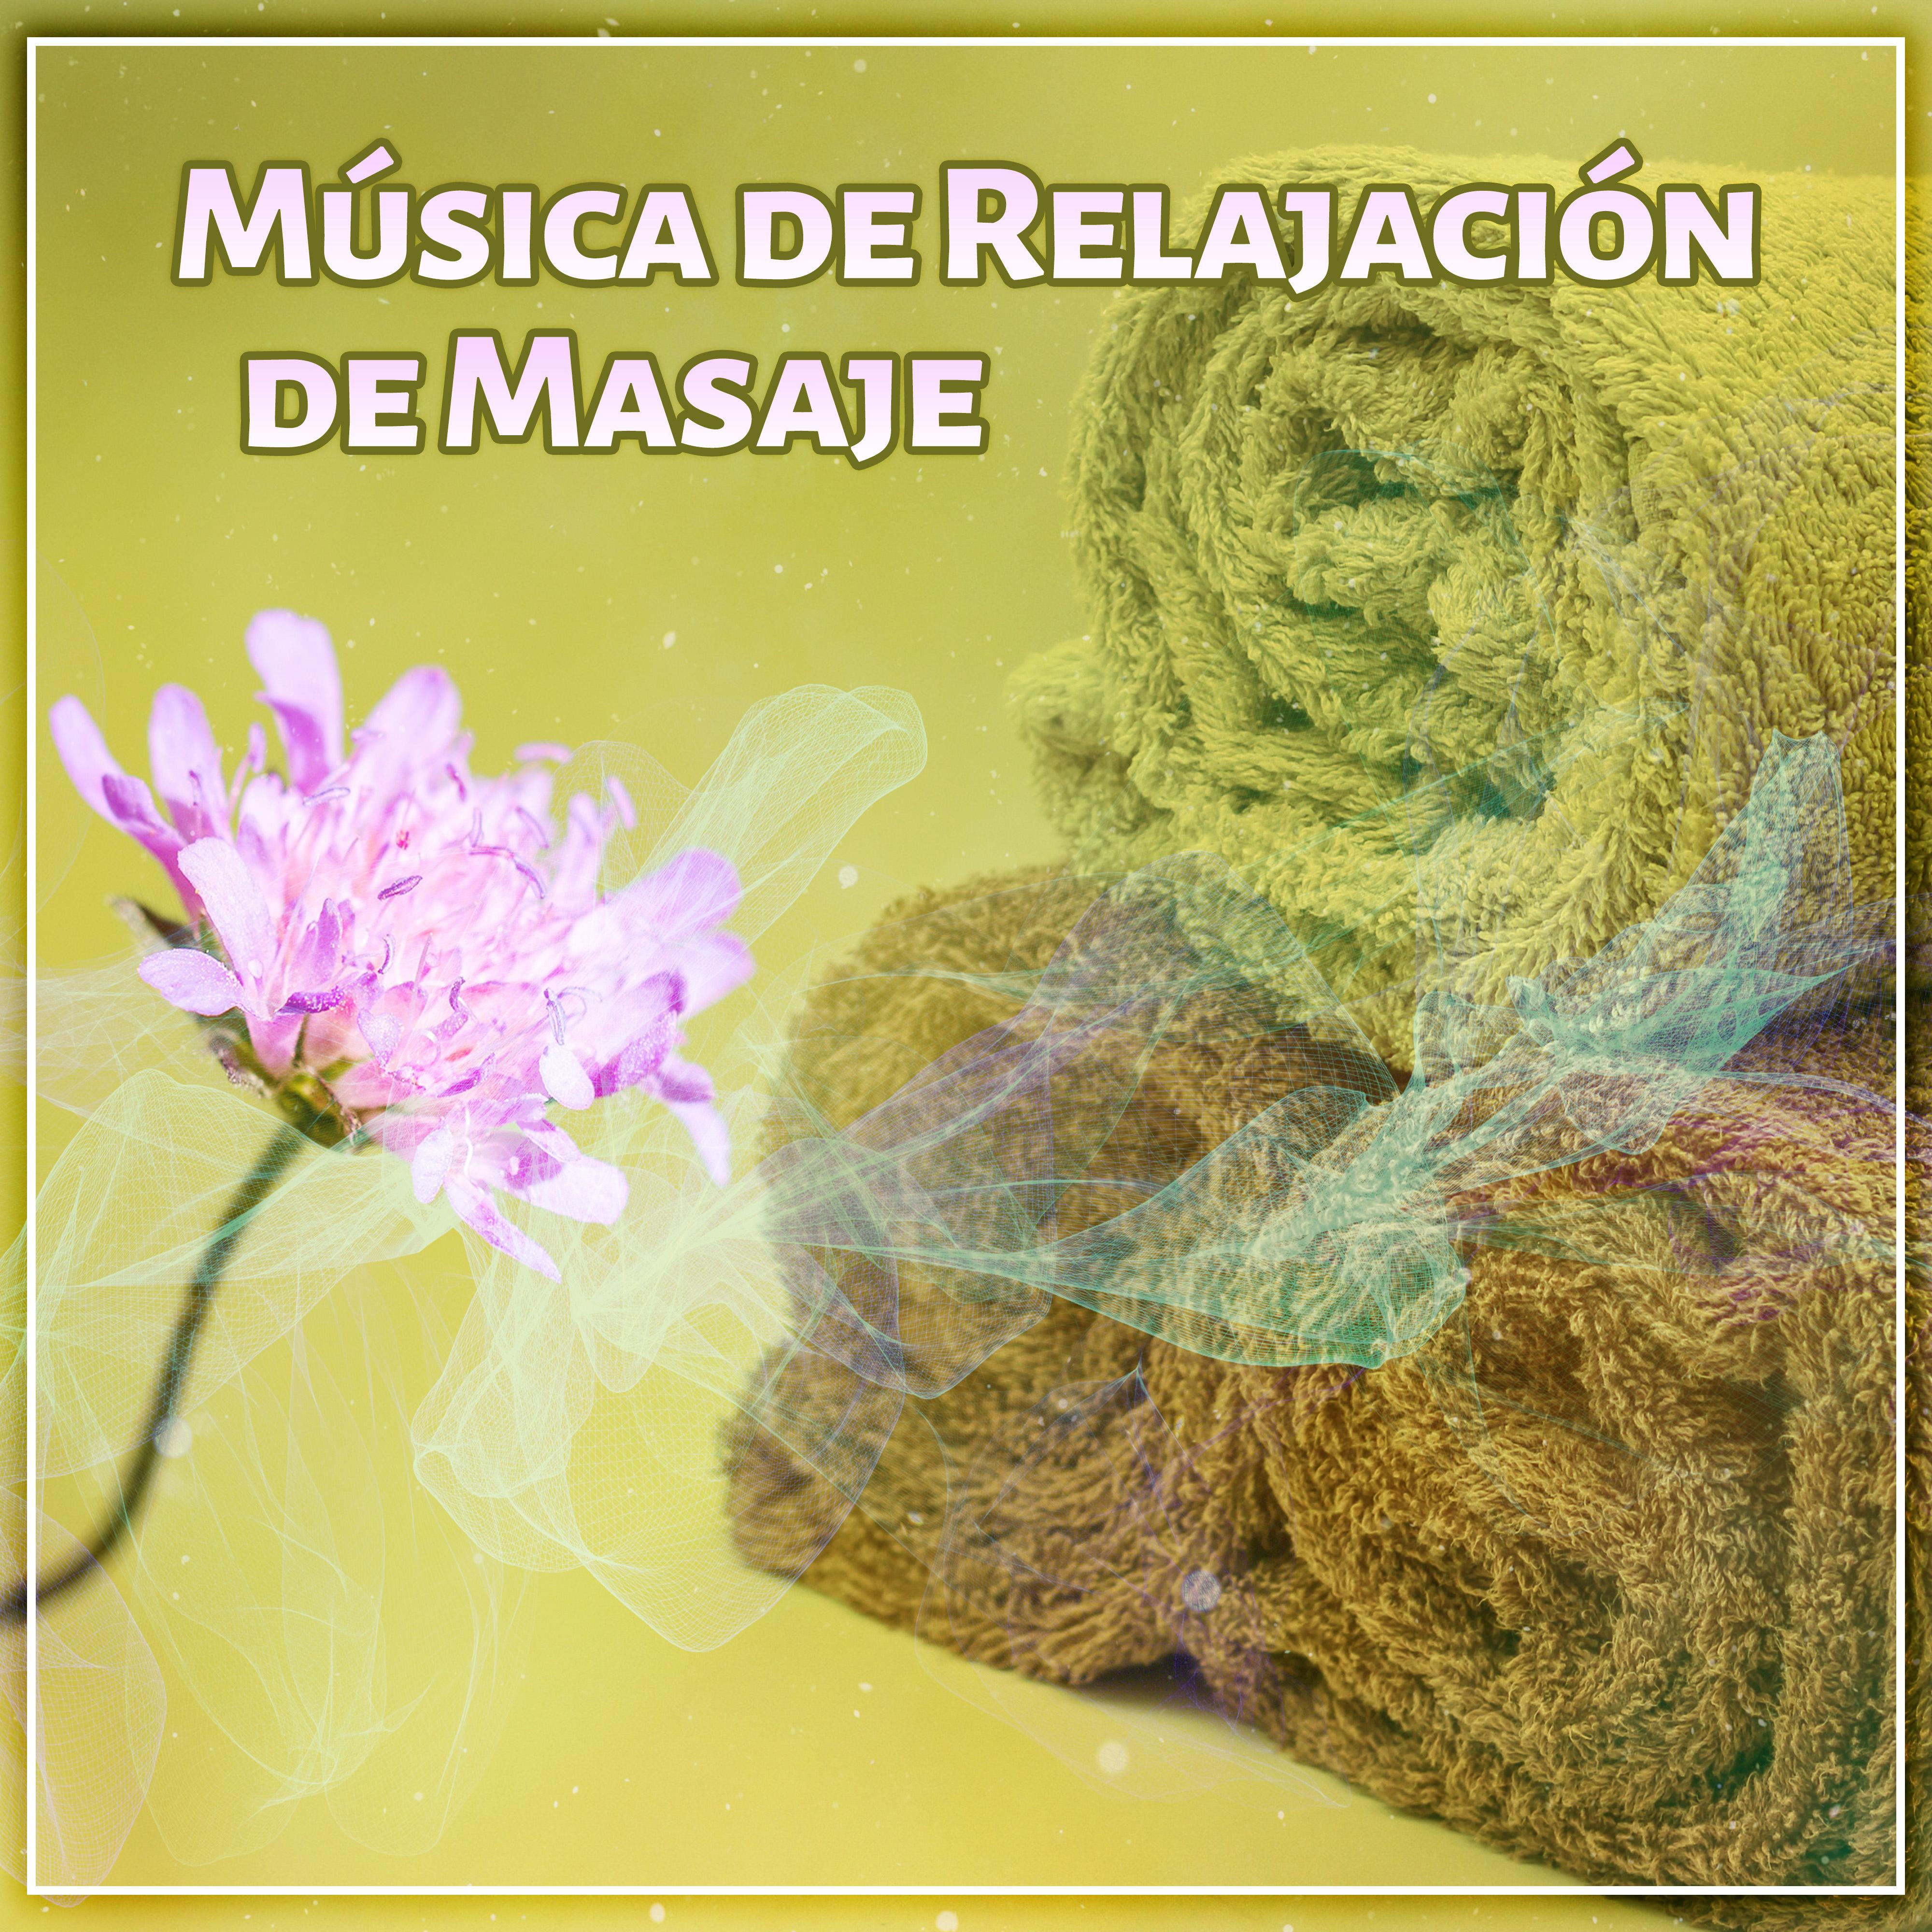 Música de Relajación de Masaje - Sonidos Suaves de la Naturaleza Calmar los Nervios, la Música Para el Masaje, Spa, Bienestar, Relajación Música